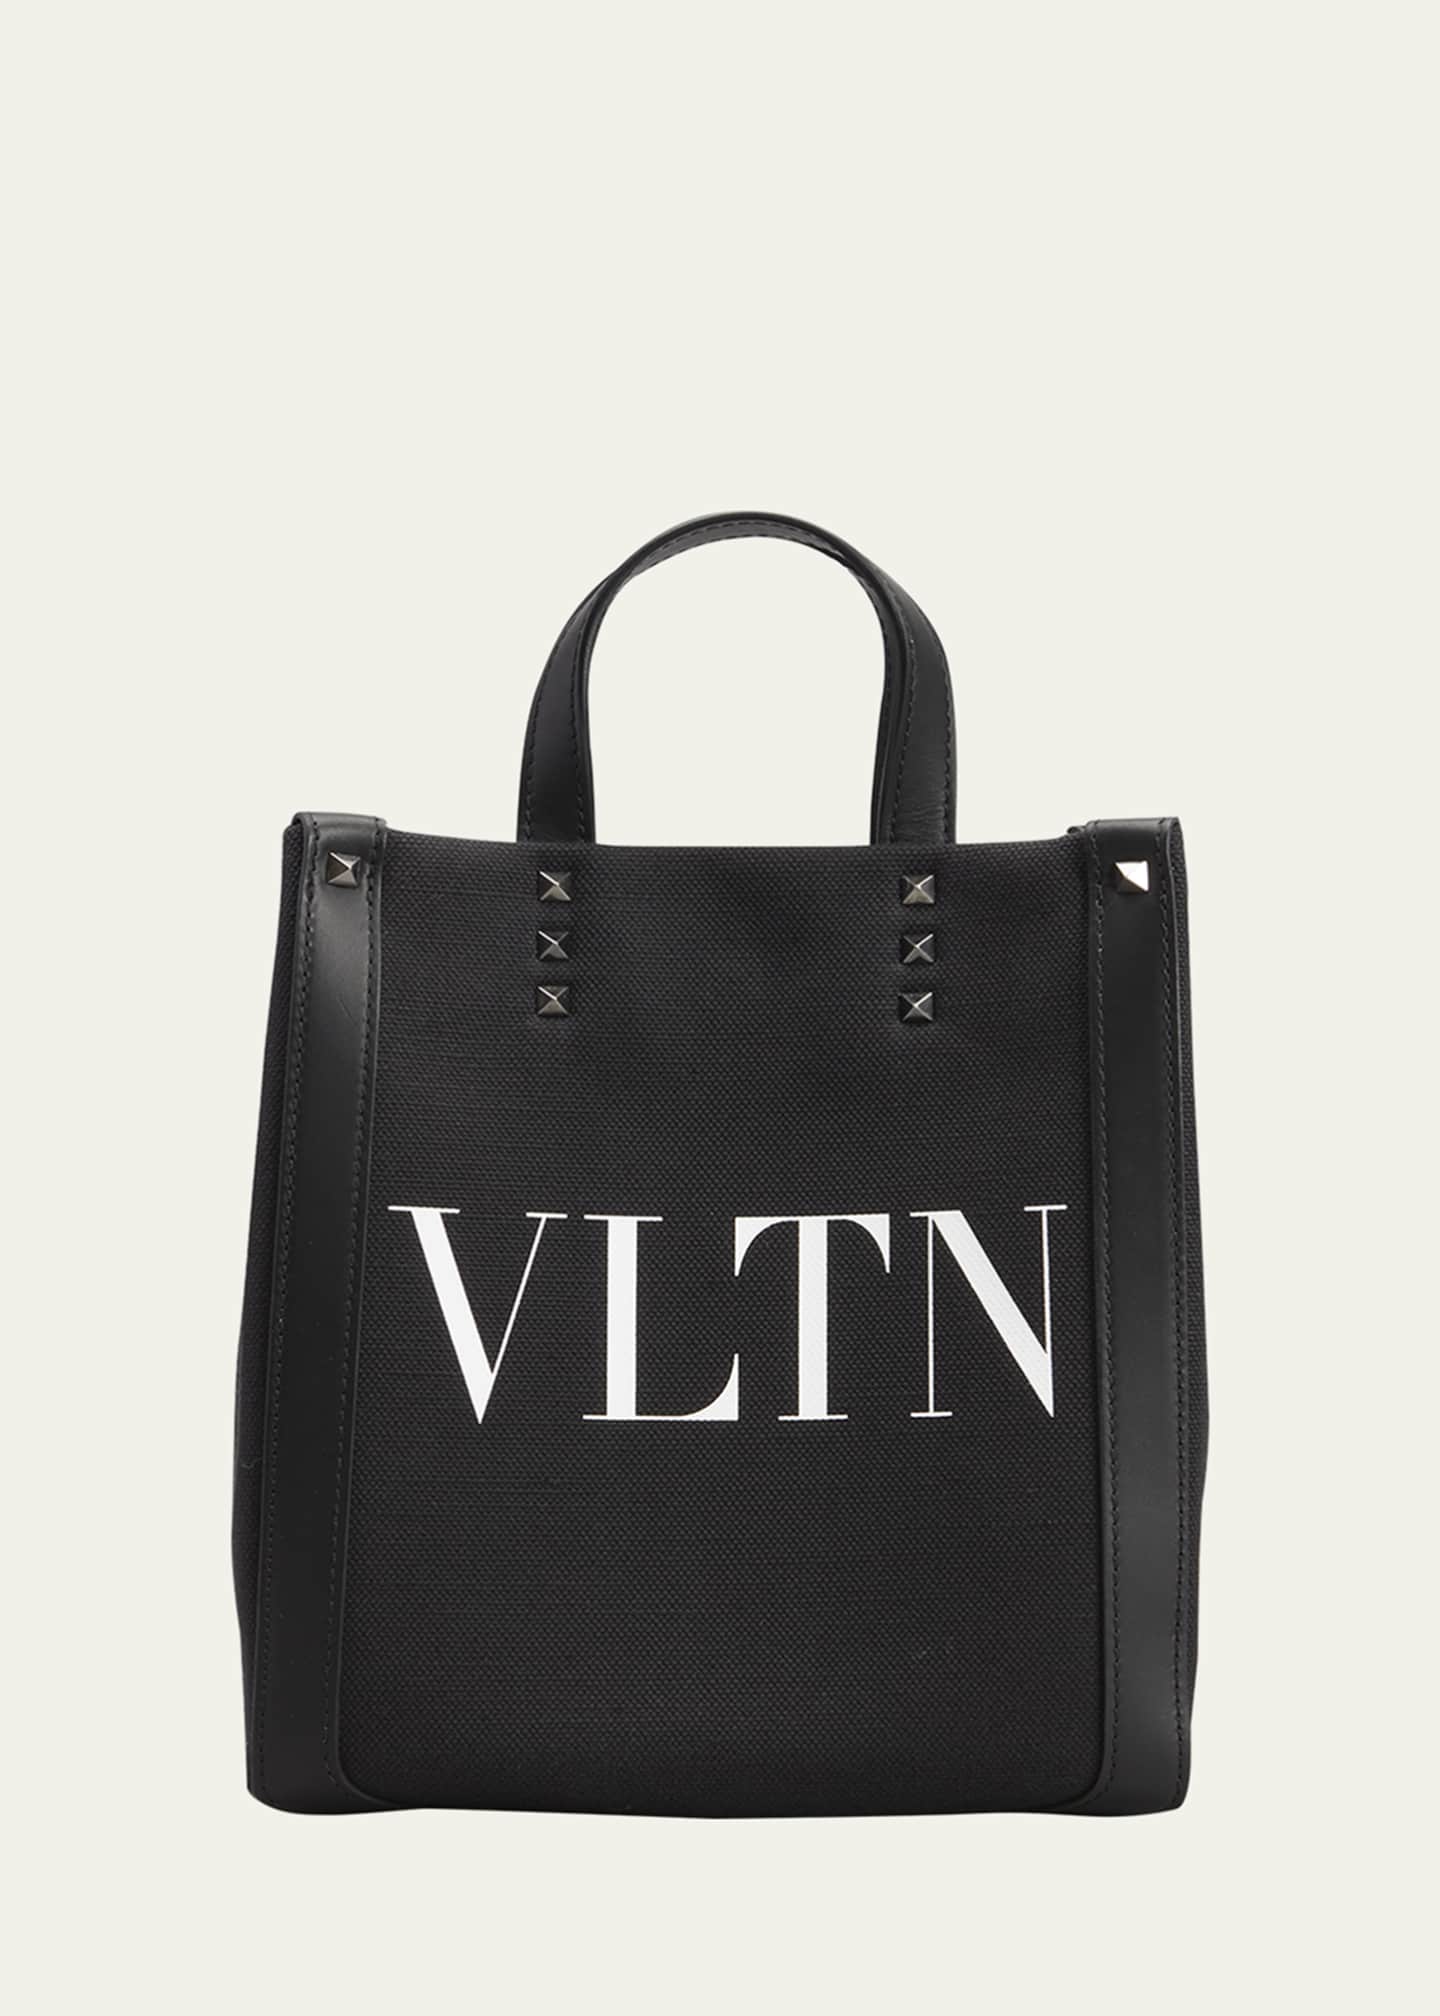 VLTN leather shoulder bag